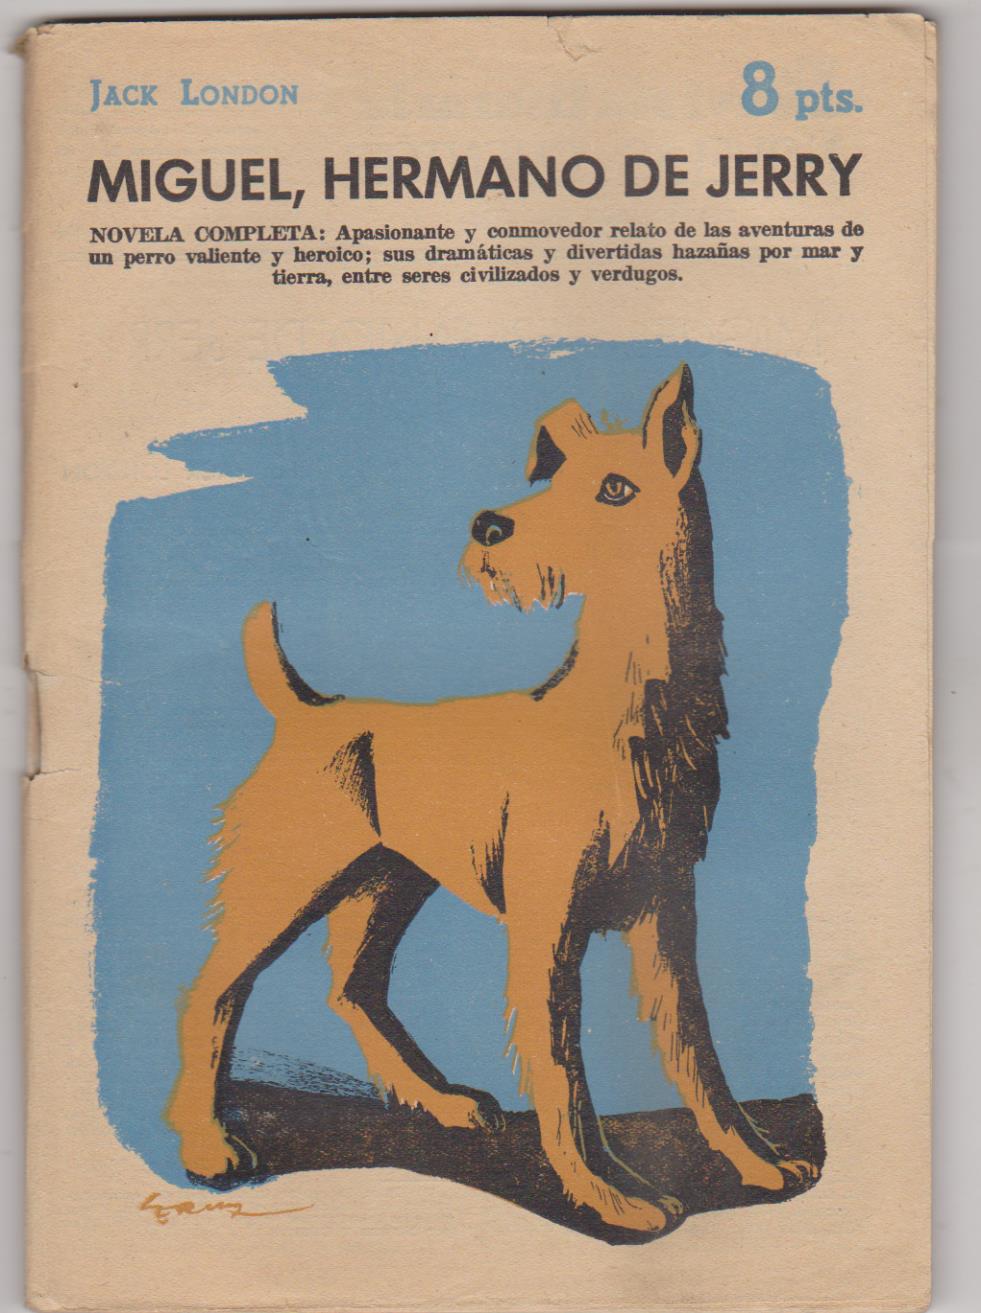 Revista Literaria nº 1482. Jack London. Miguel, hermano de Jerry. Año 1959